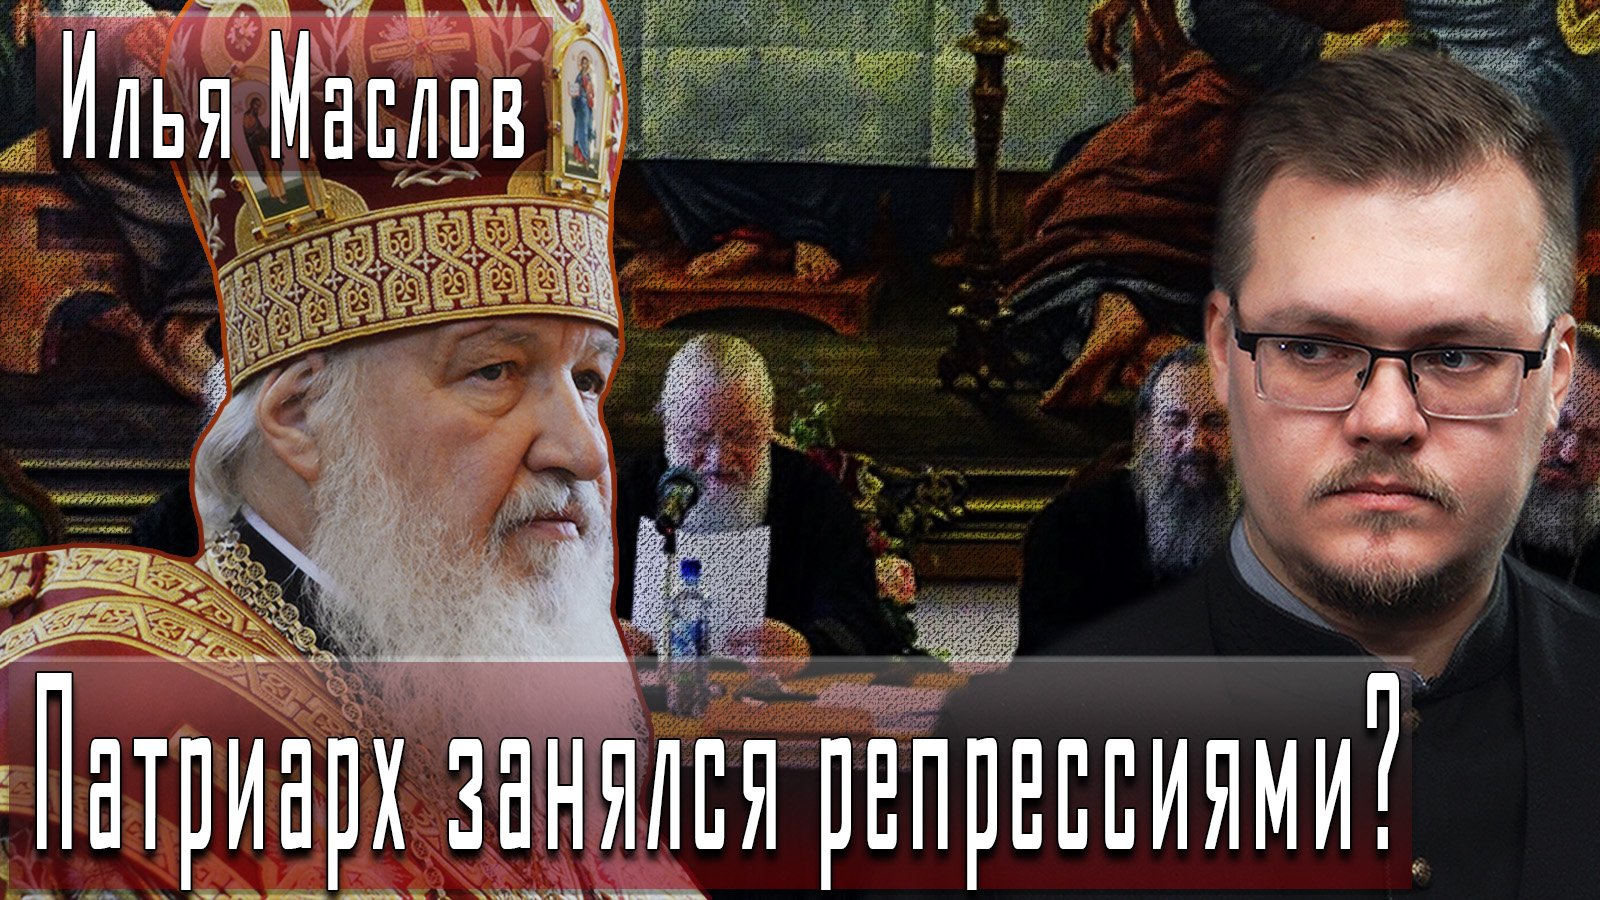 Патриарх занялся репрессиями? #ИльяМаслов #ДмитрийДанилов